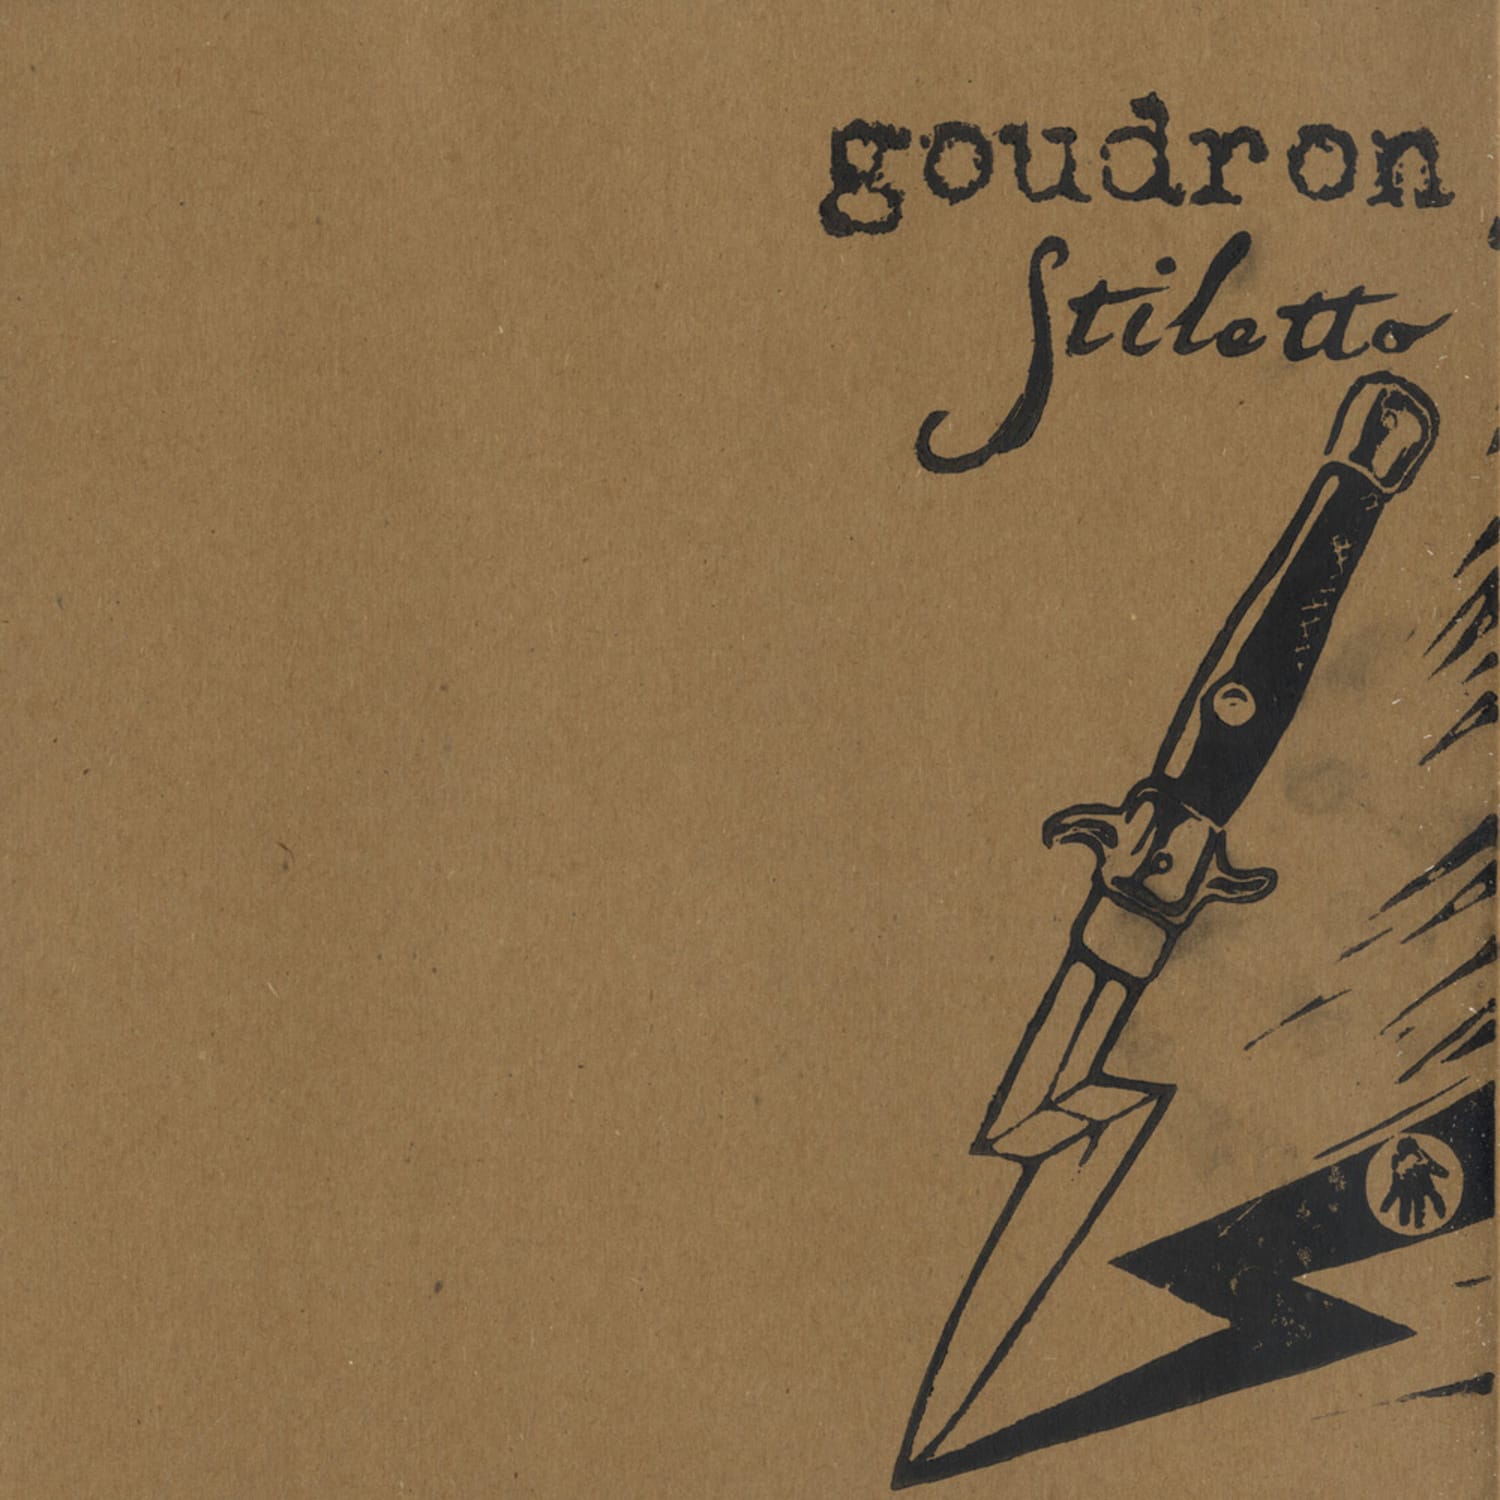 Goudron - STILETTO